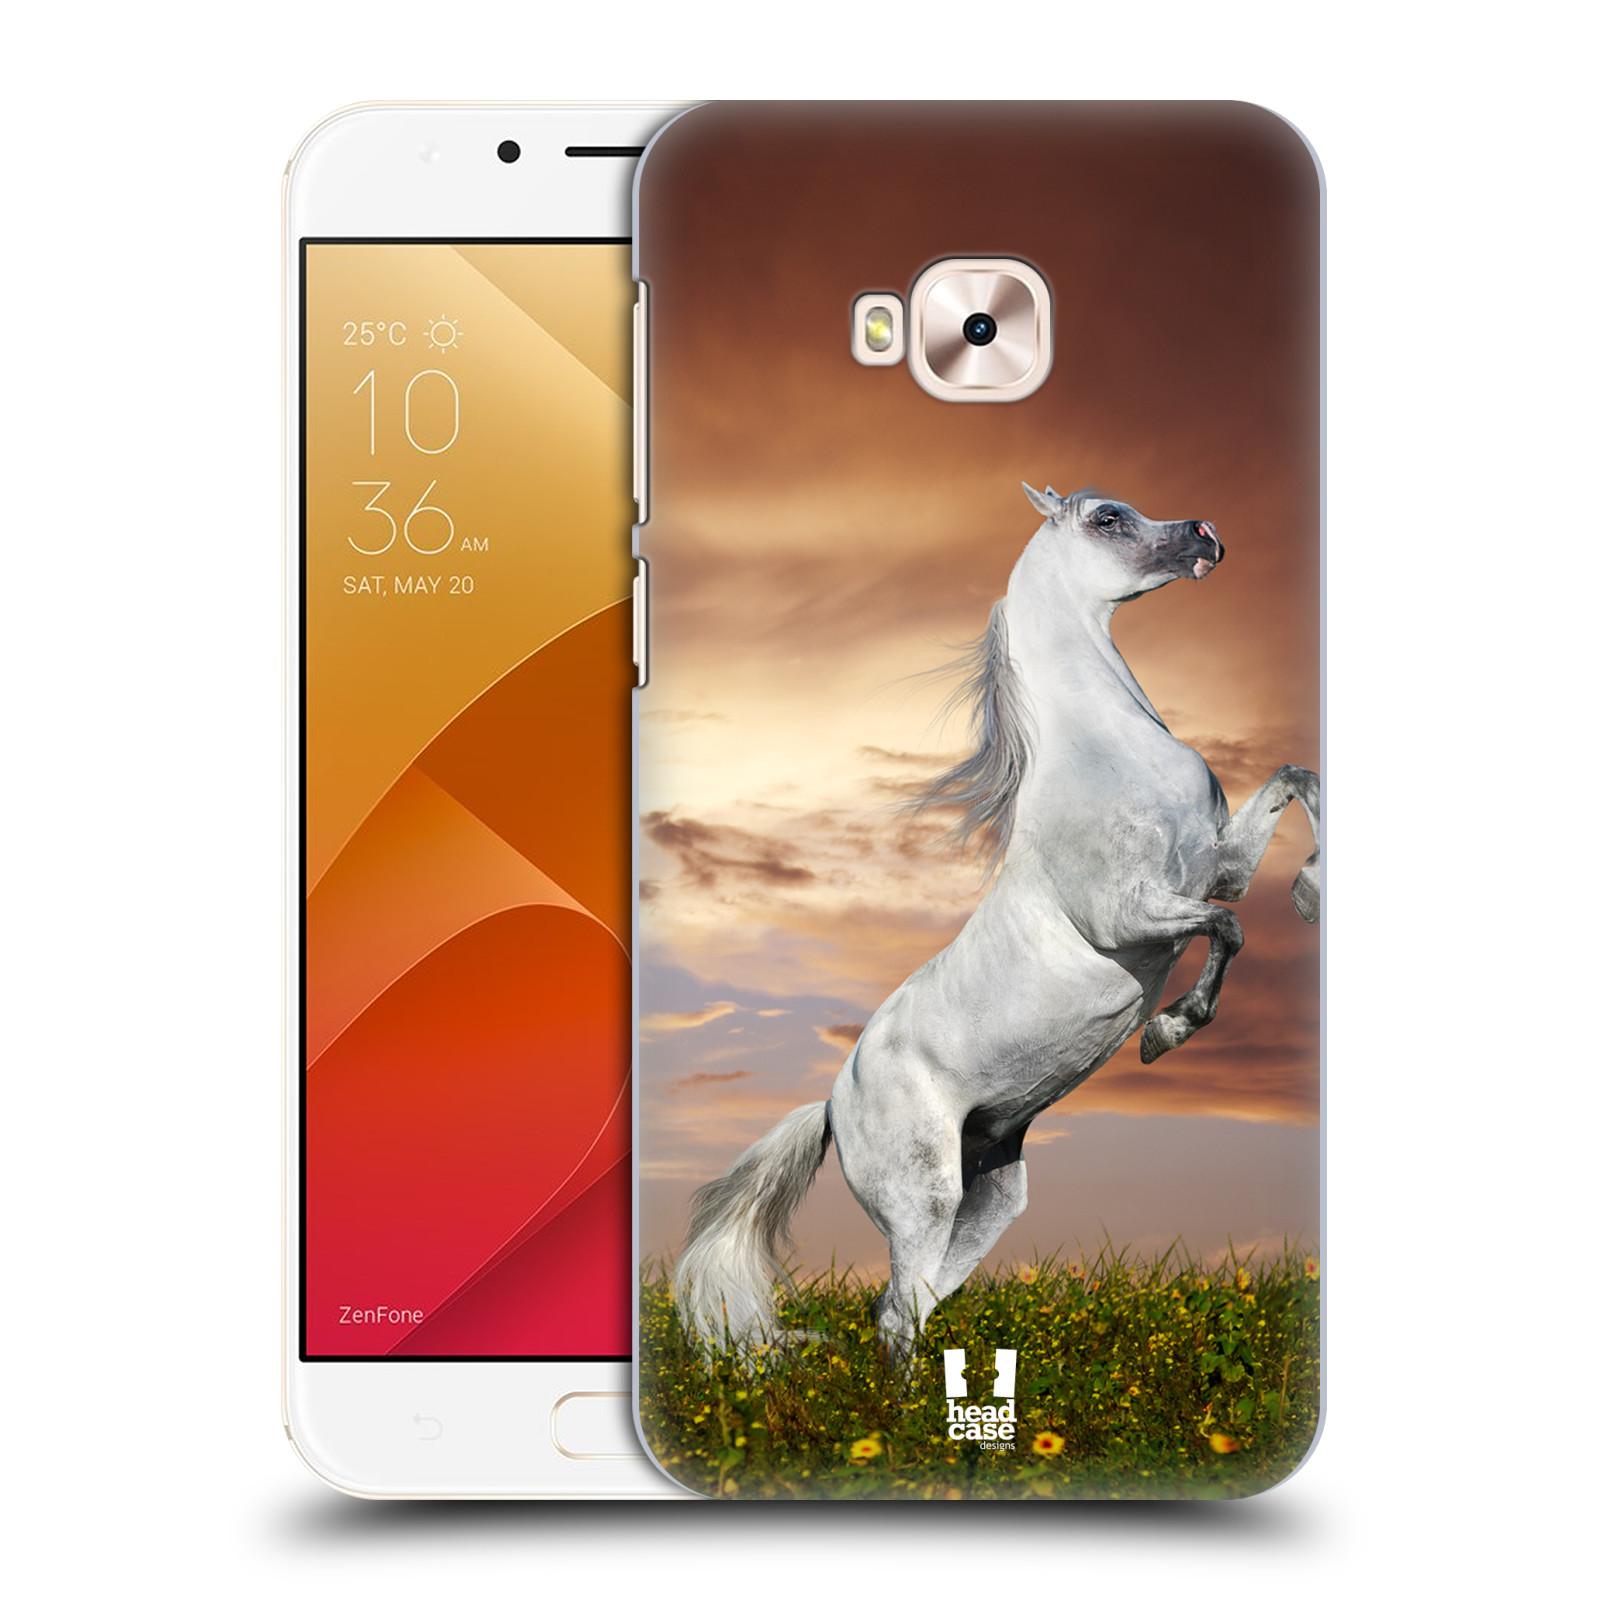 Zadní obal pro mobil Asus Zenfone 4 Selfie Pro ZD552KL - HEAD CASE - Svět zvířat divoký kůň